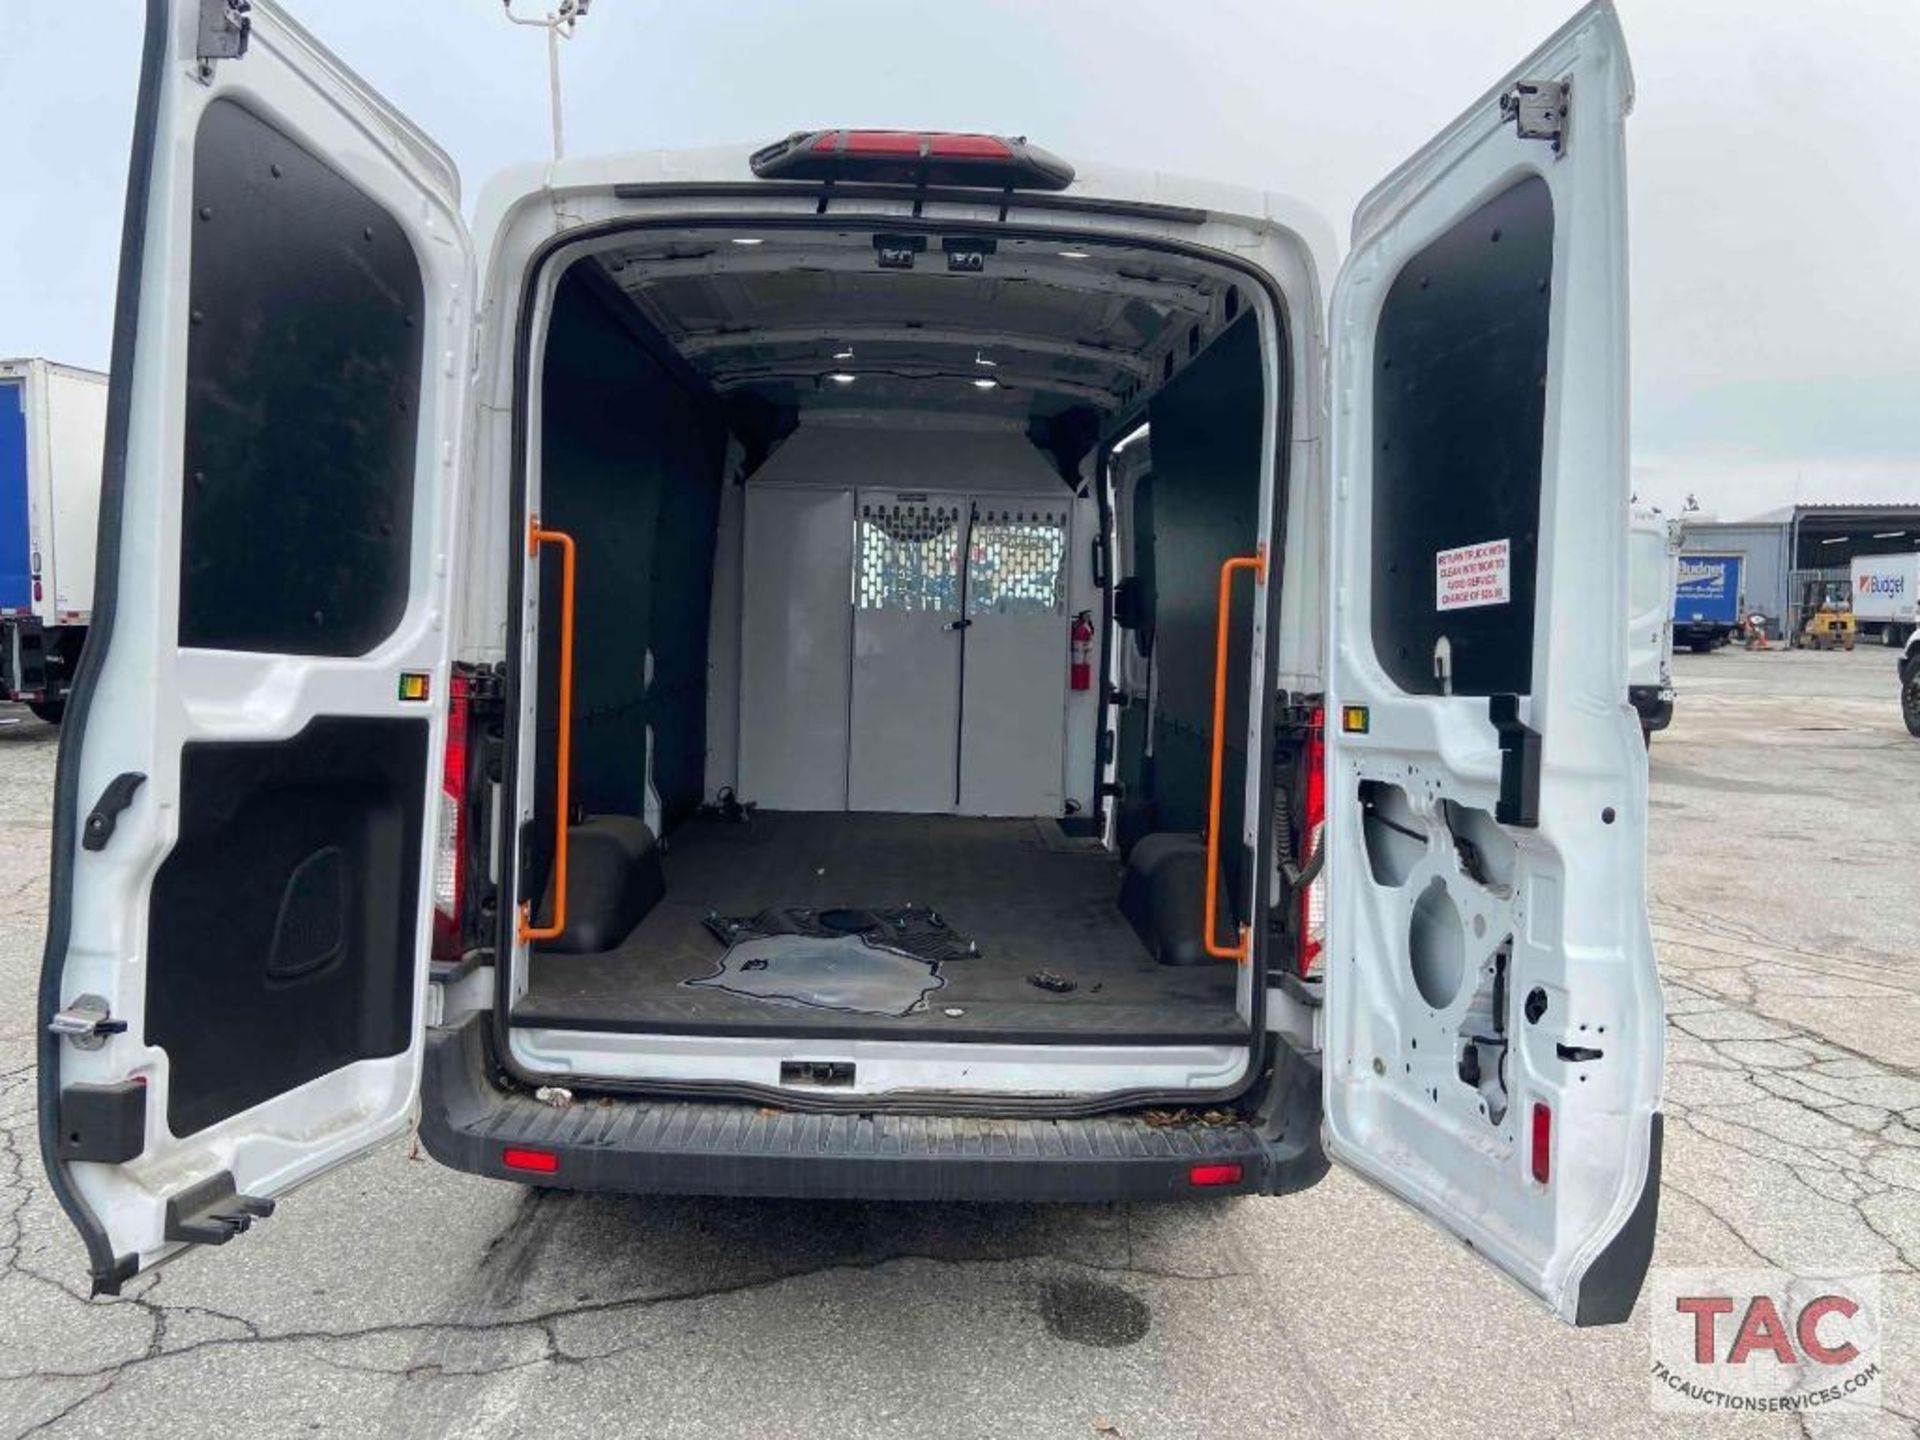 2019 Ford Transit 150 Cargo Van - Image 14 of 90